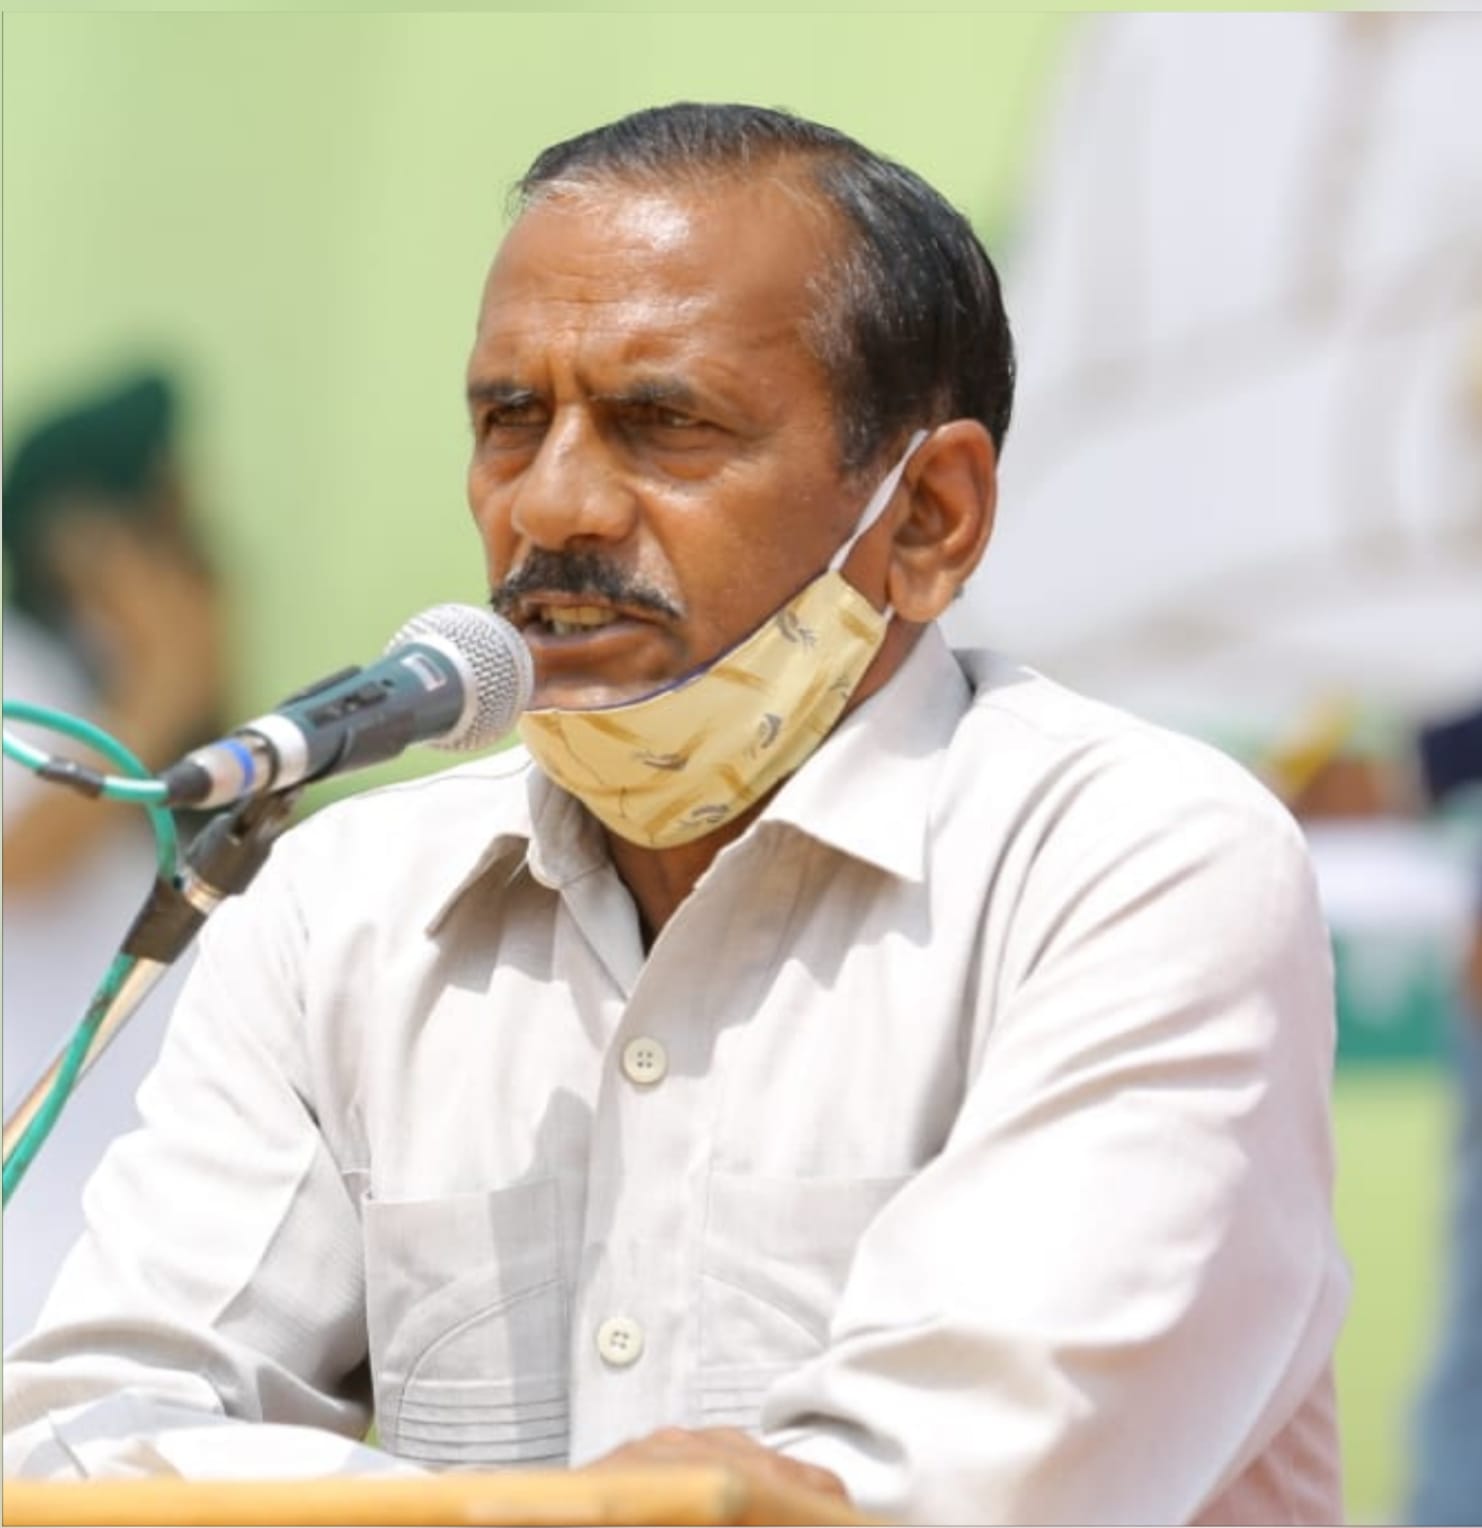 भाजपा ने केवल अपने चहेतों को ही बांटी रेबड़िया, कांग्रेस ने कभी नहीं किया भेदभाव: जगदीश चौधरी